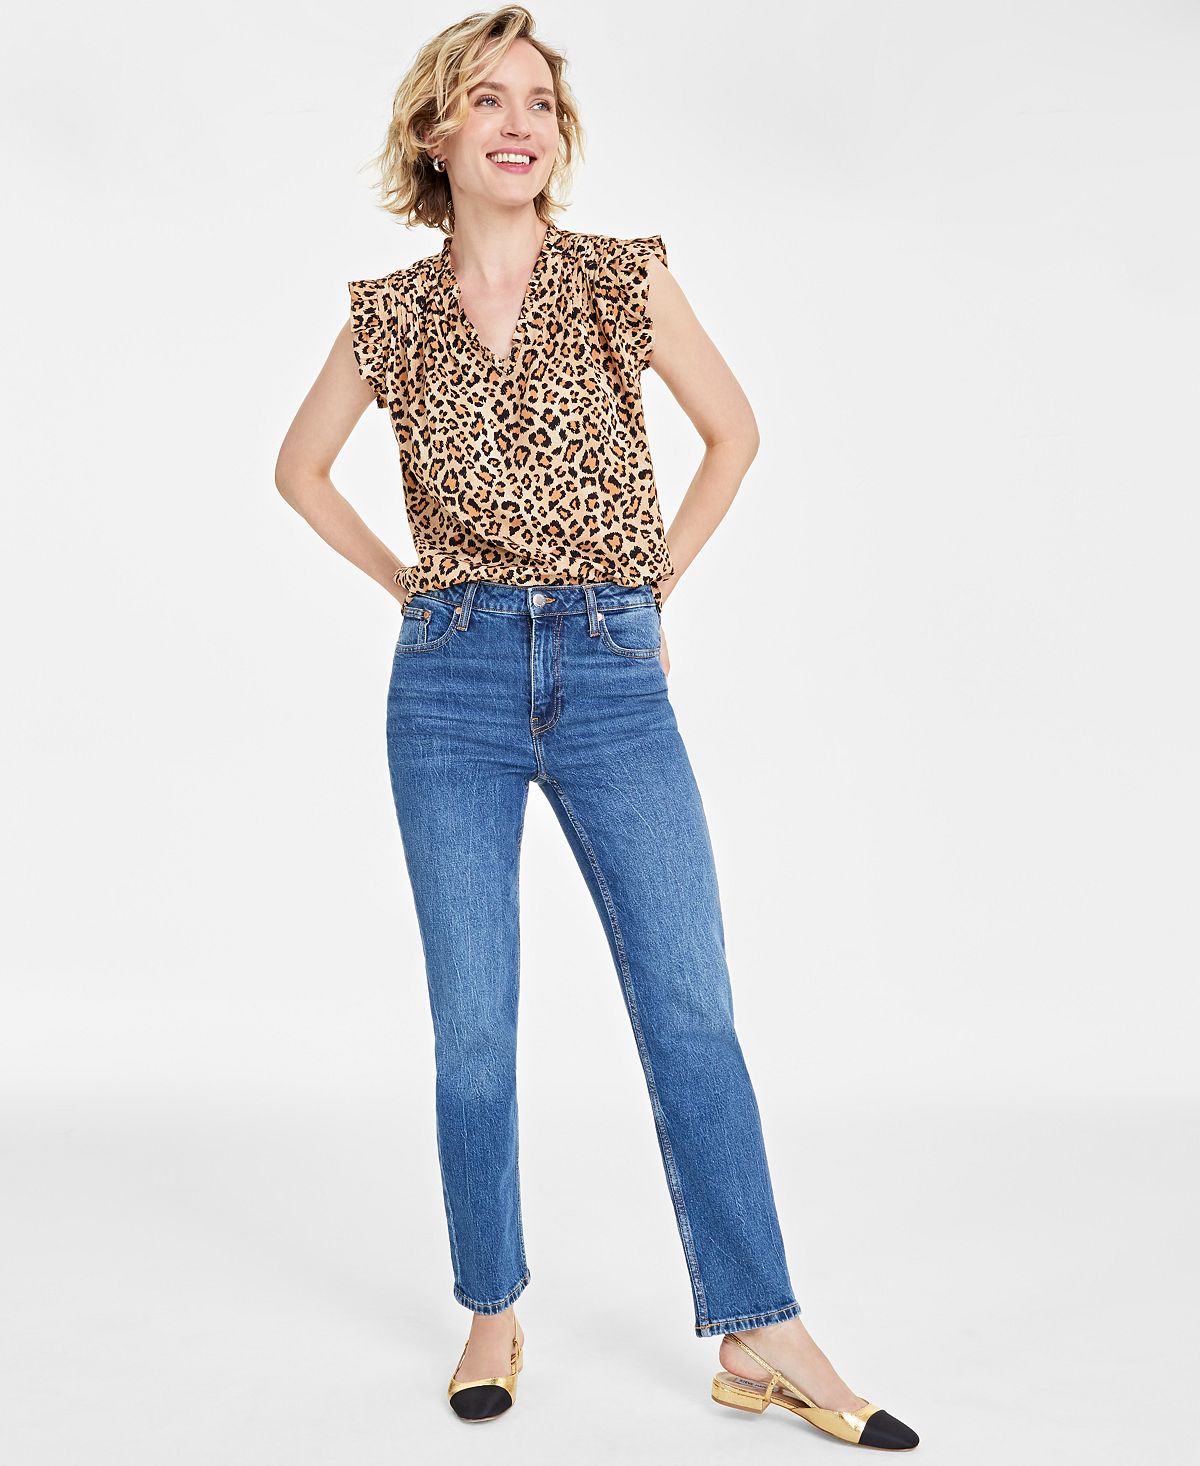 Женские джинсы прямого кроя с высокой посадкой, стандартной и короткой длины On 34th